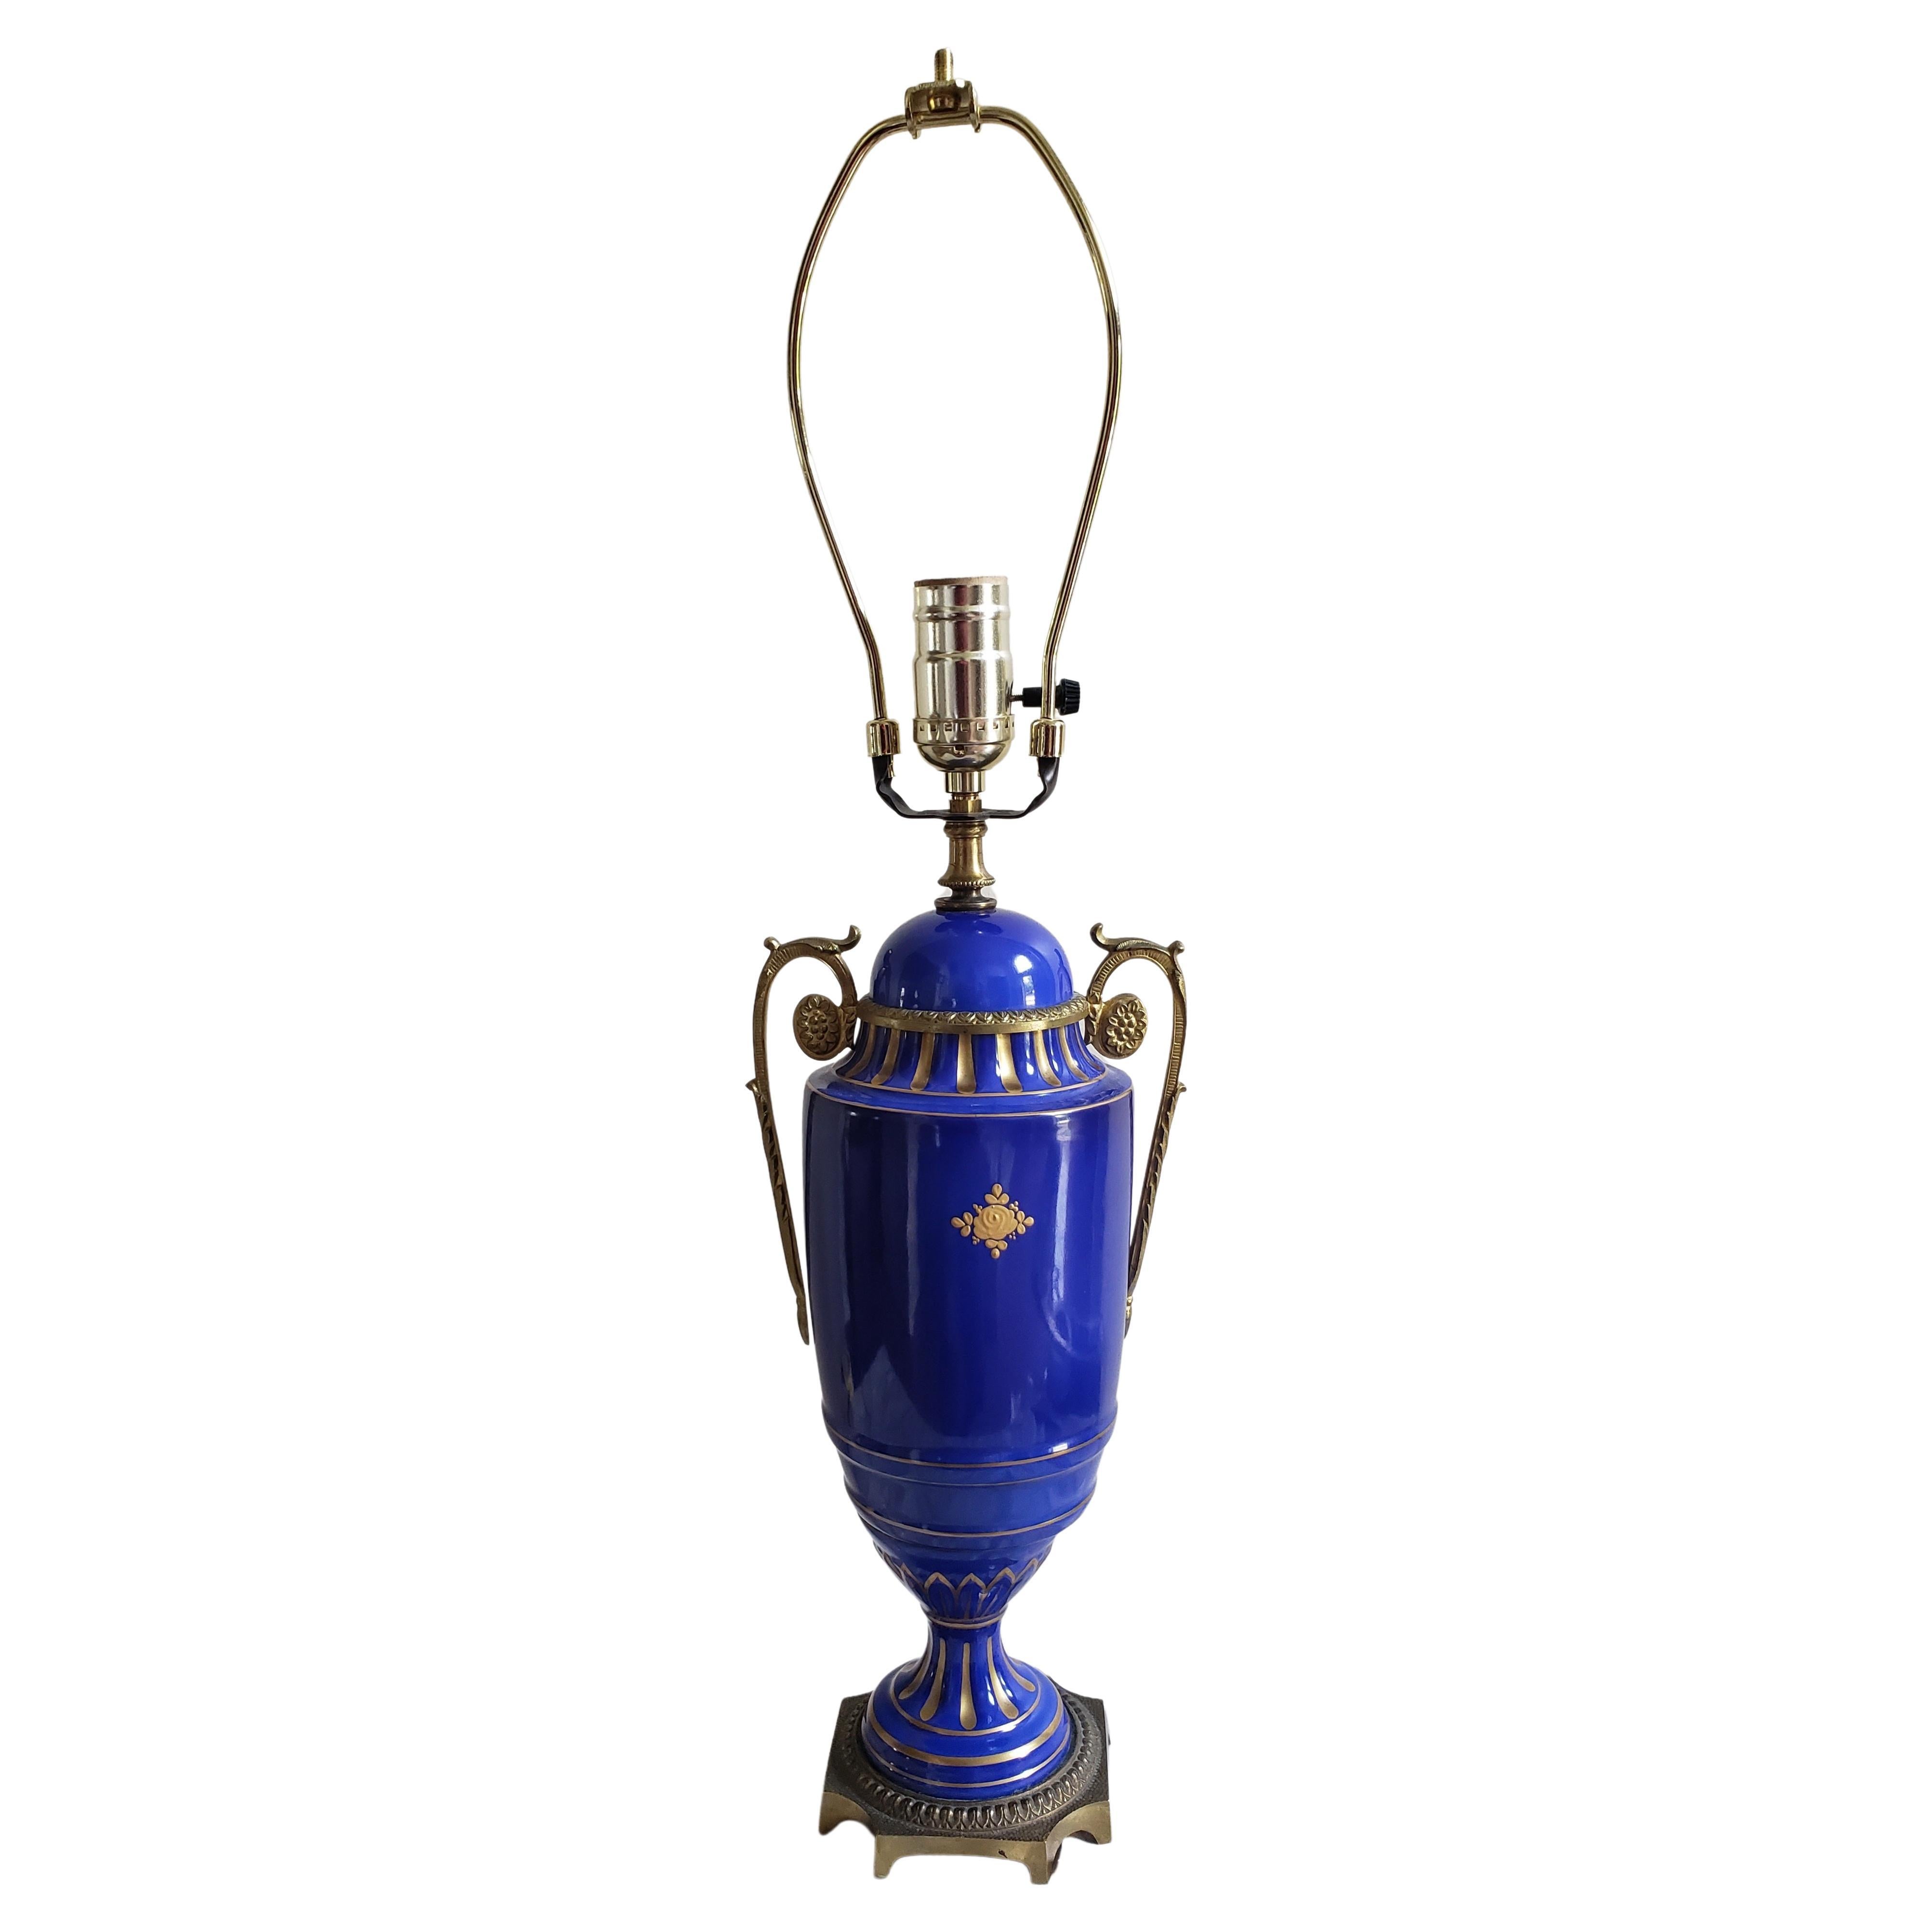 Porcelaine de Limoges des années 1920, peinte à la main et de couleur bleu cobalt.  Vase doré monté en lampe.
Mesure 6